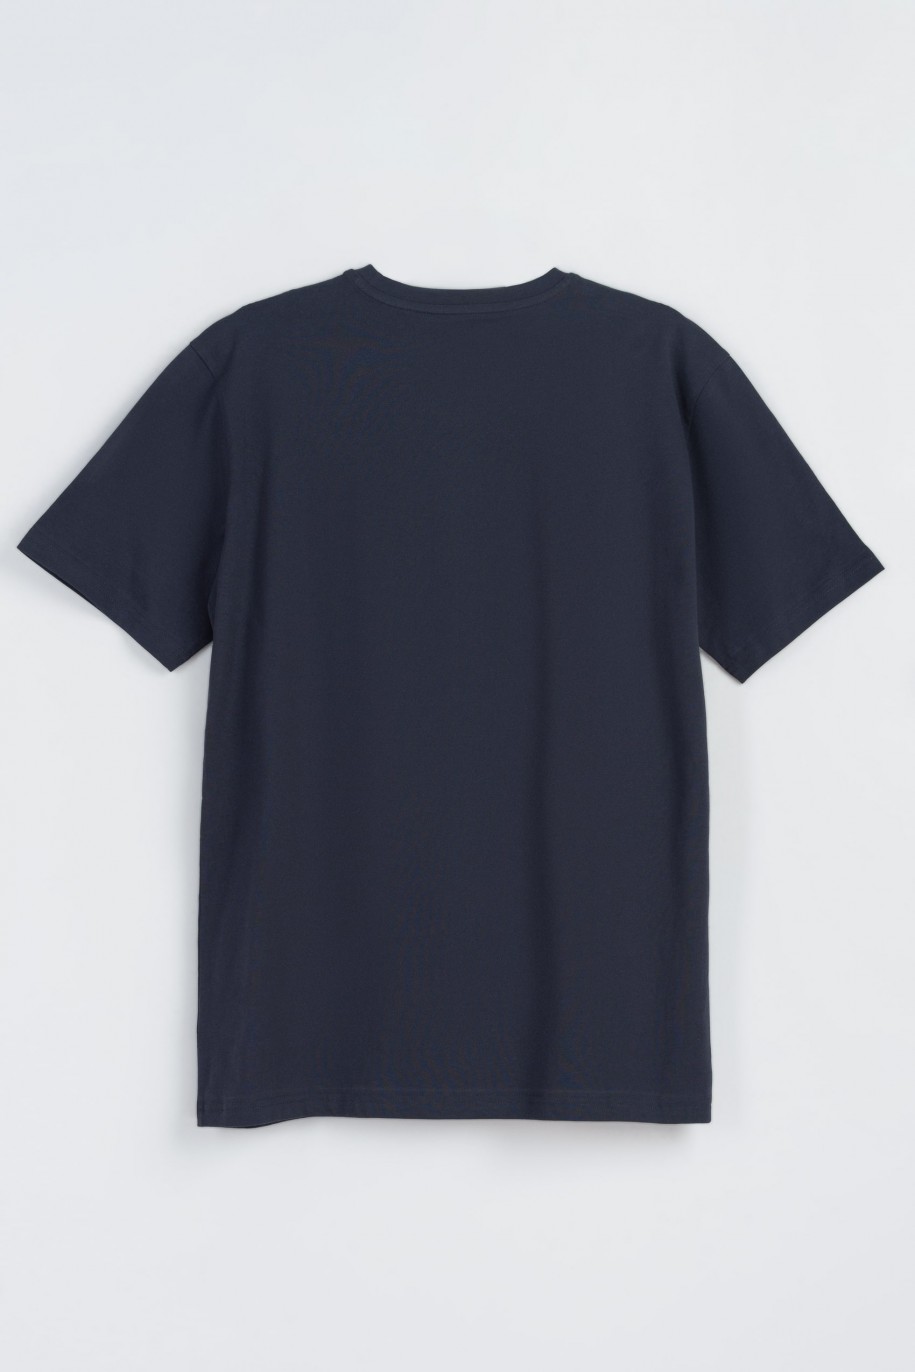 Granatowy t-shirt z niebieskim nadrukiem na wysokości piersi - 47384